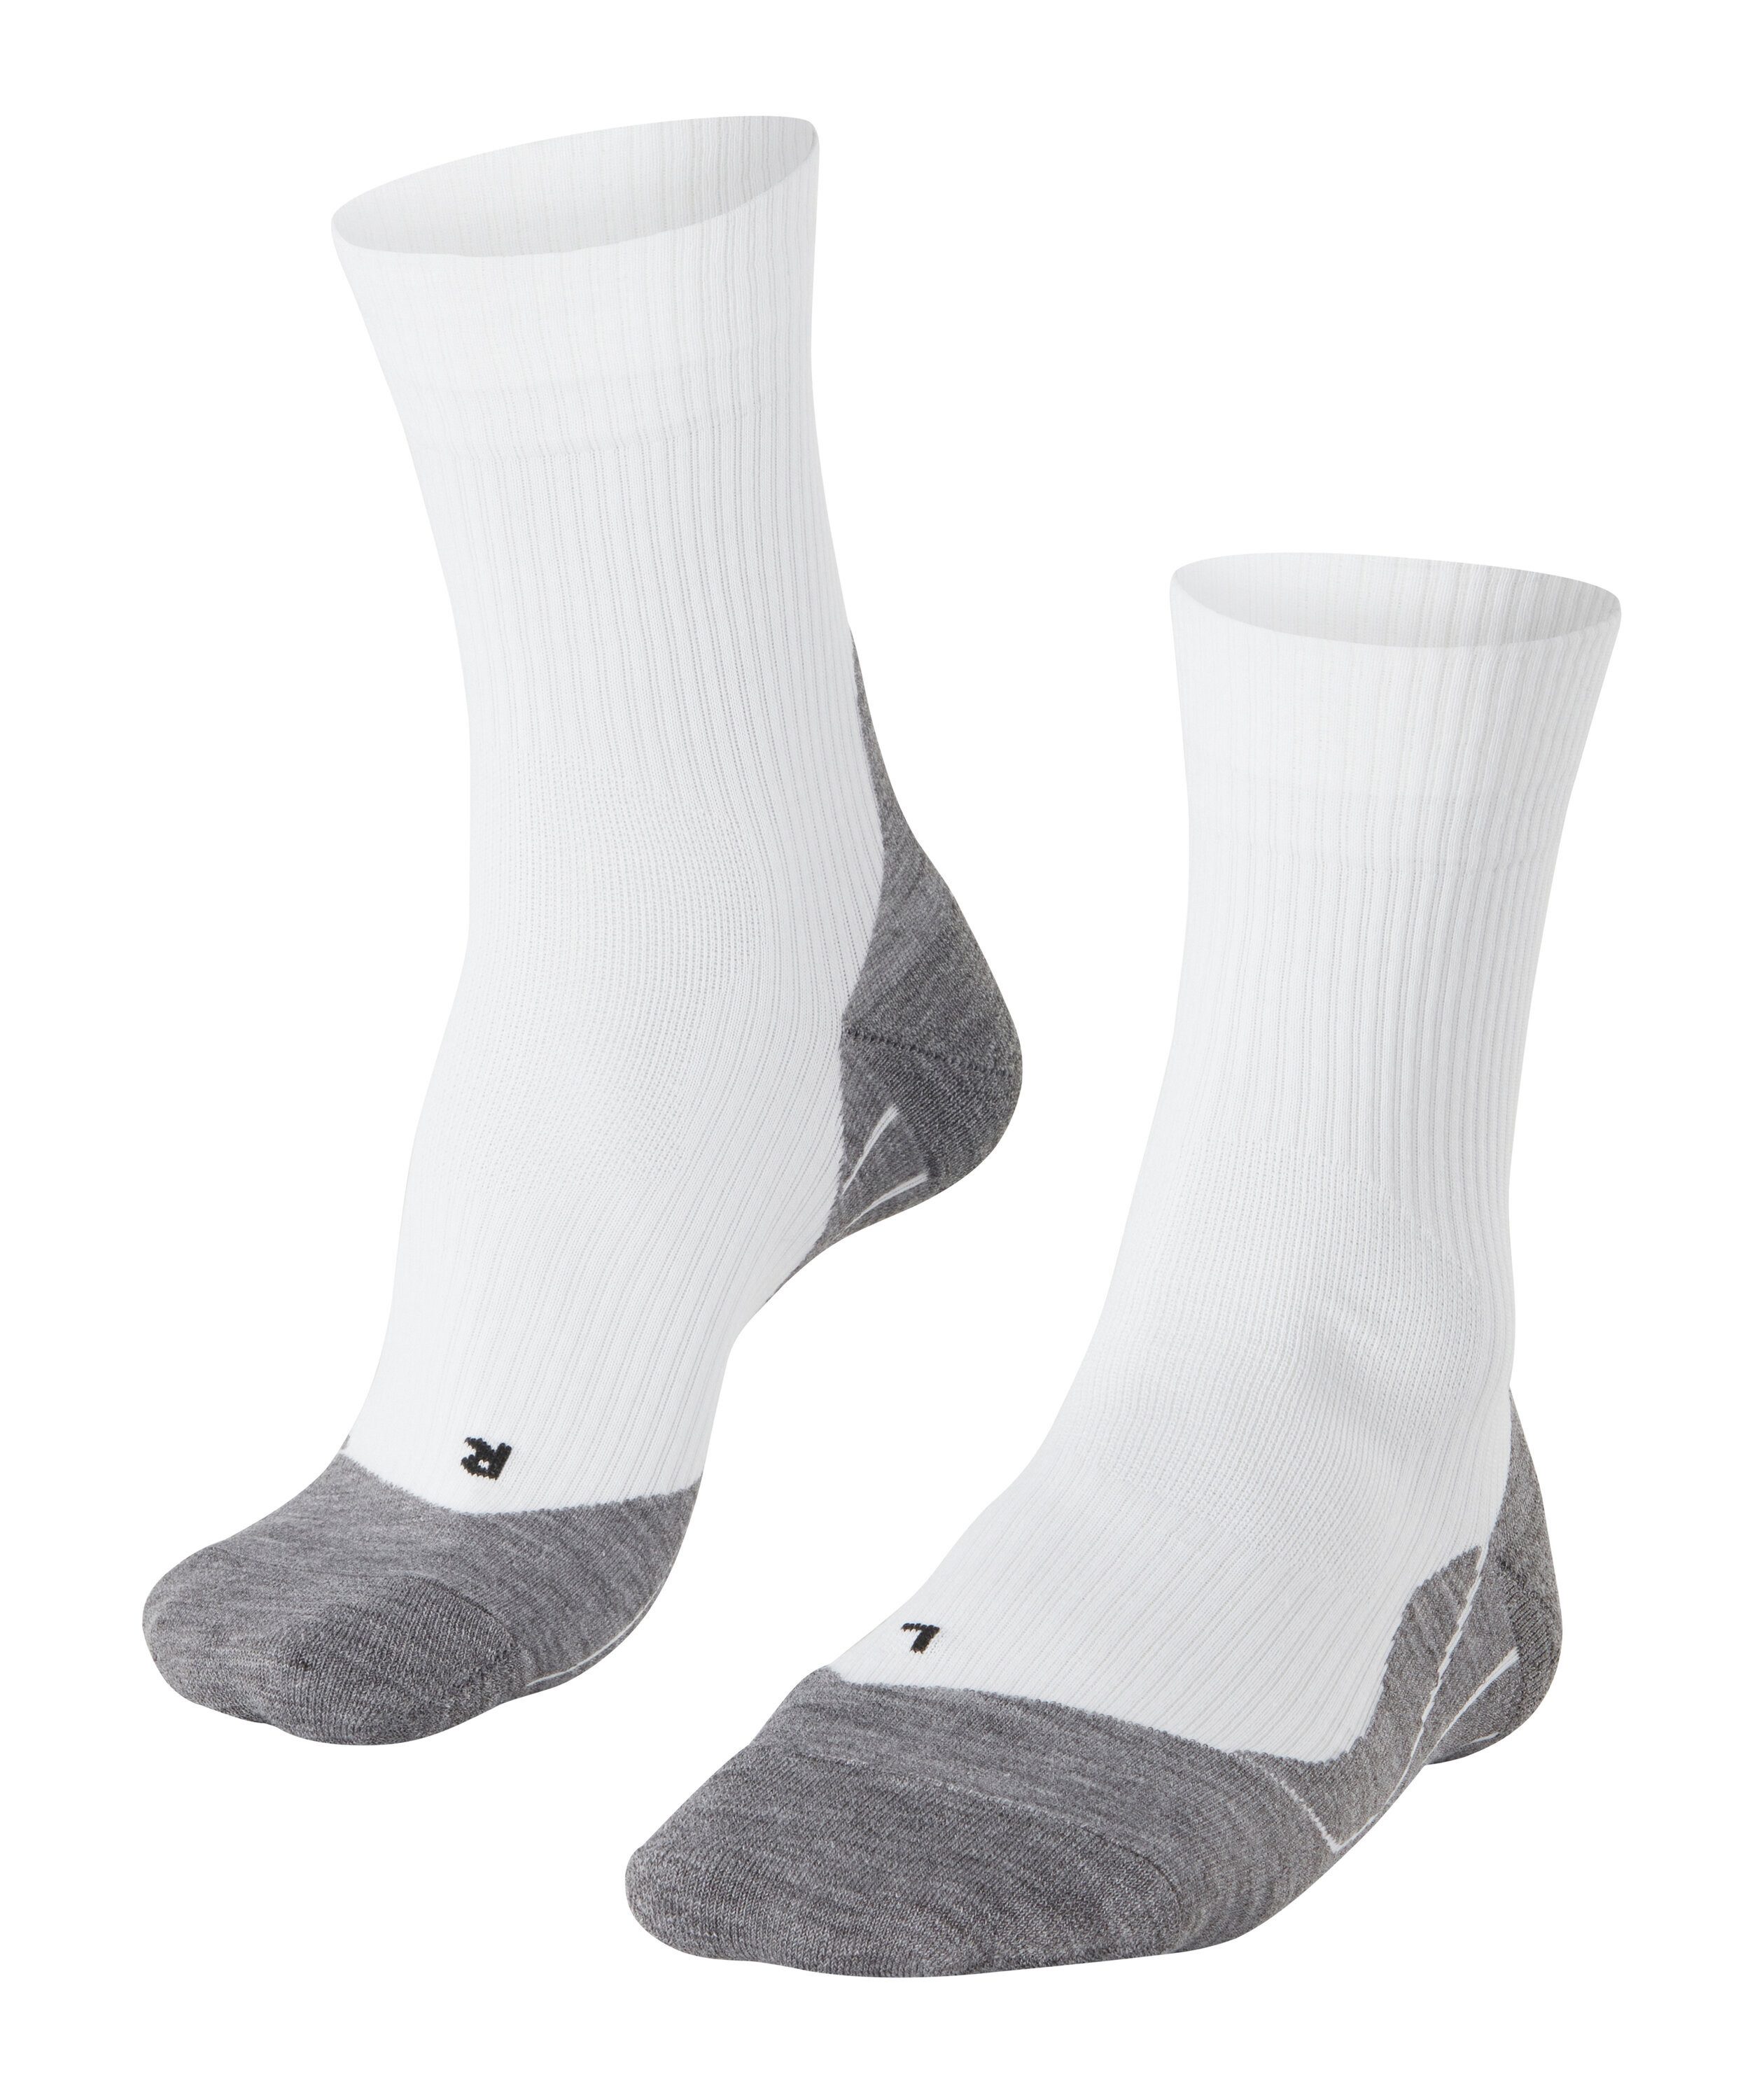 FALKE Tennissocken TE4 Stabilisierende Socken für Sandplätze